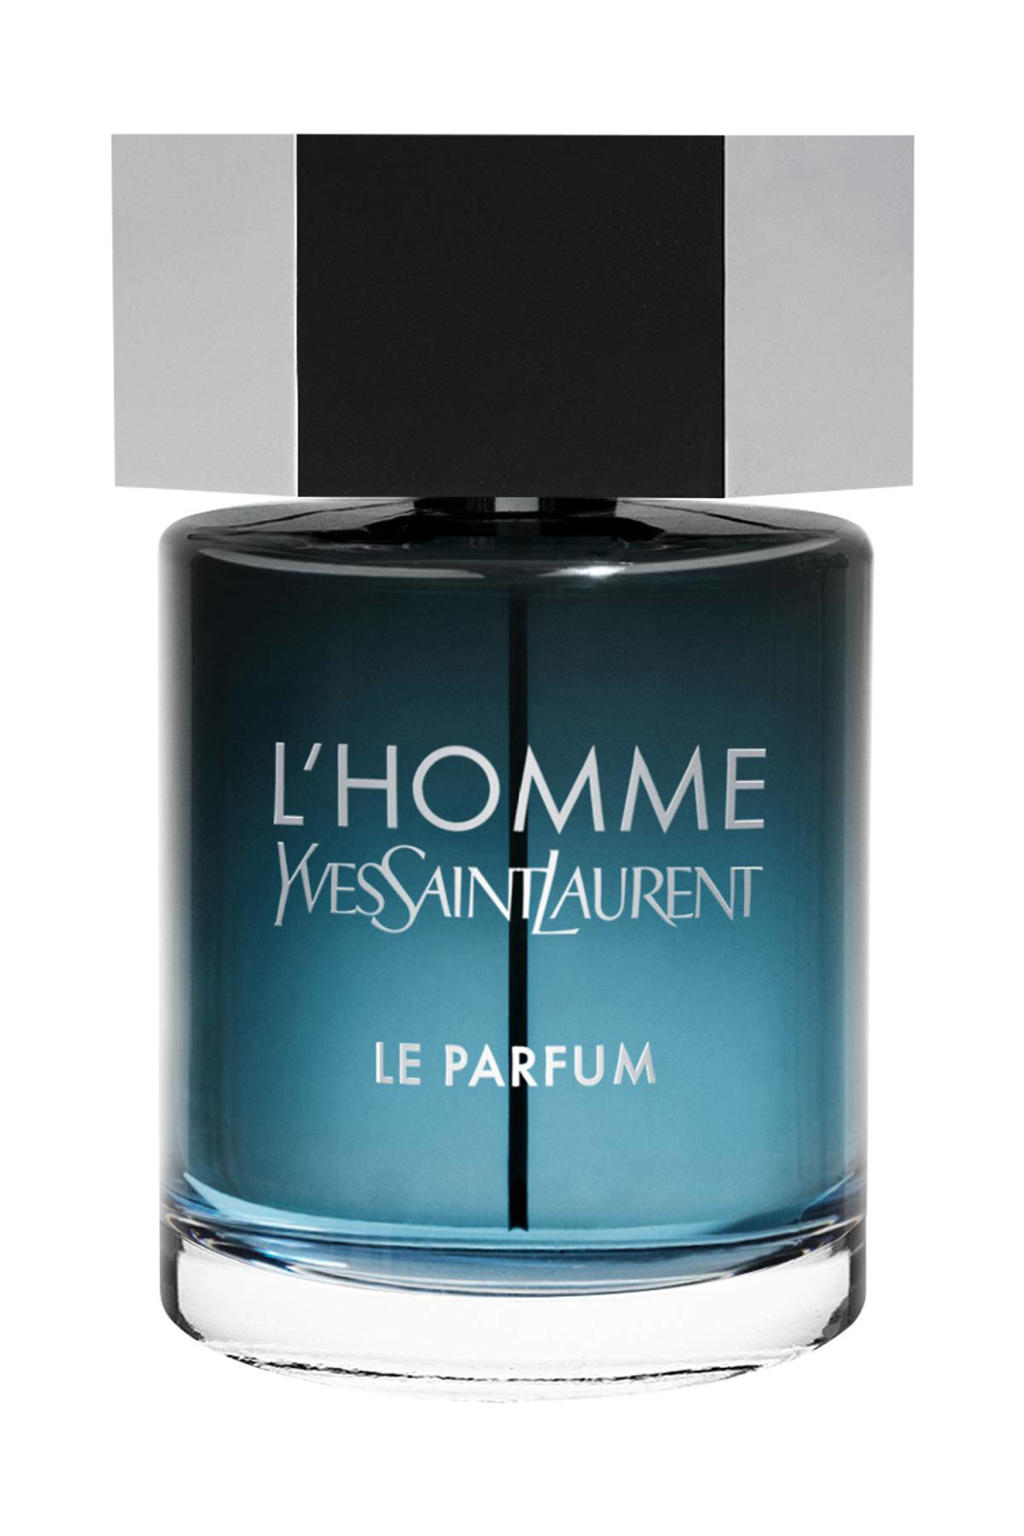 Yves Saint Laurent L'homme Le parfum - 100 ml